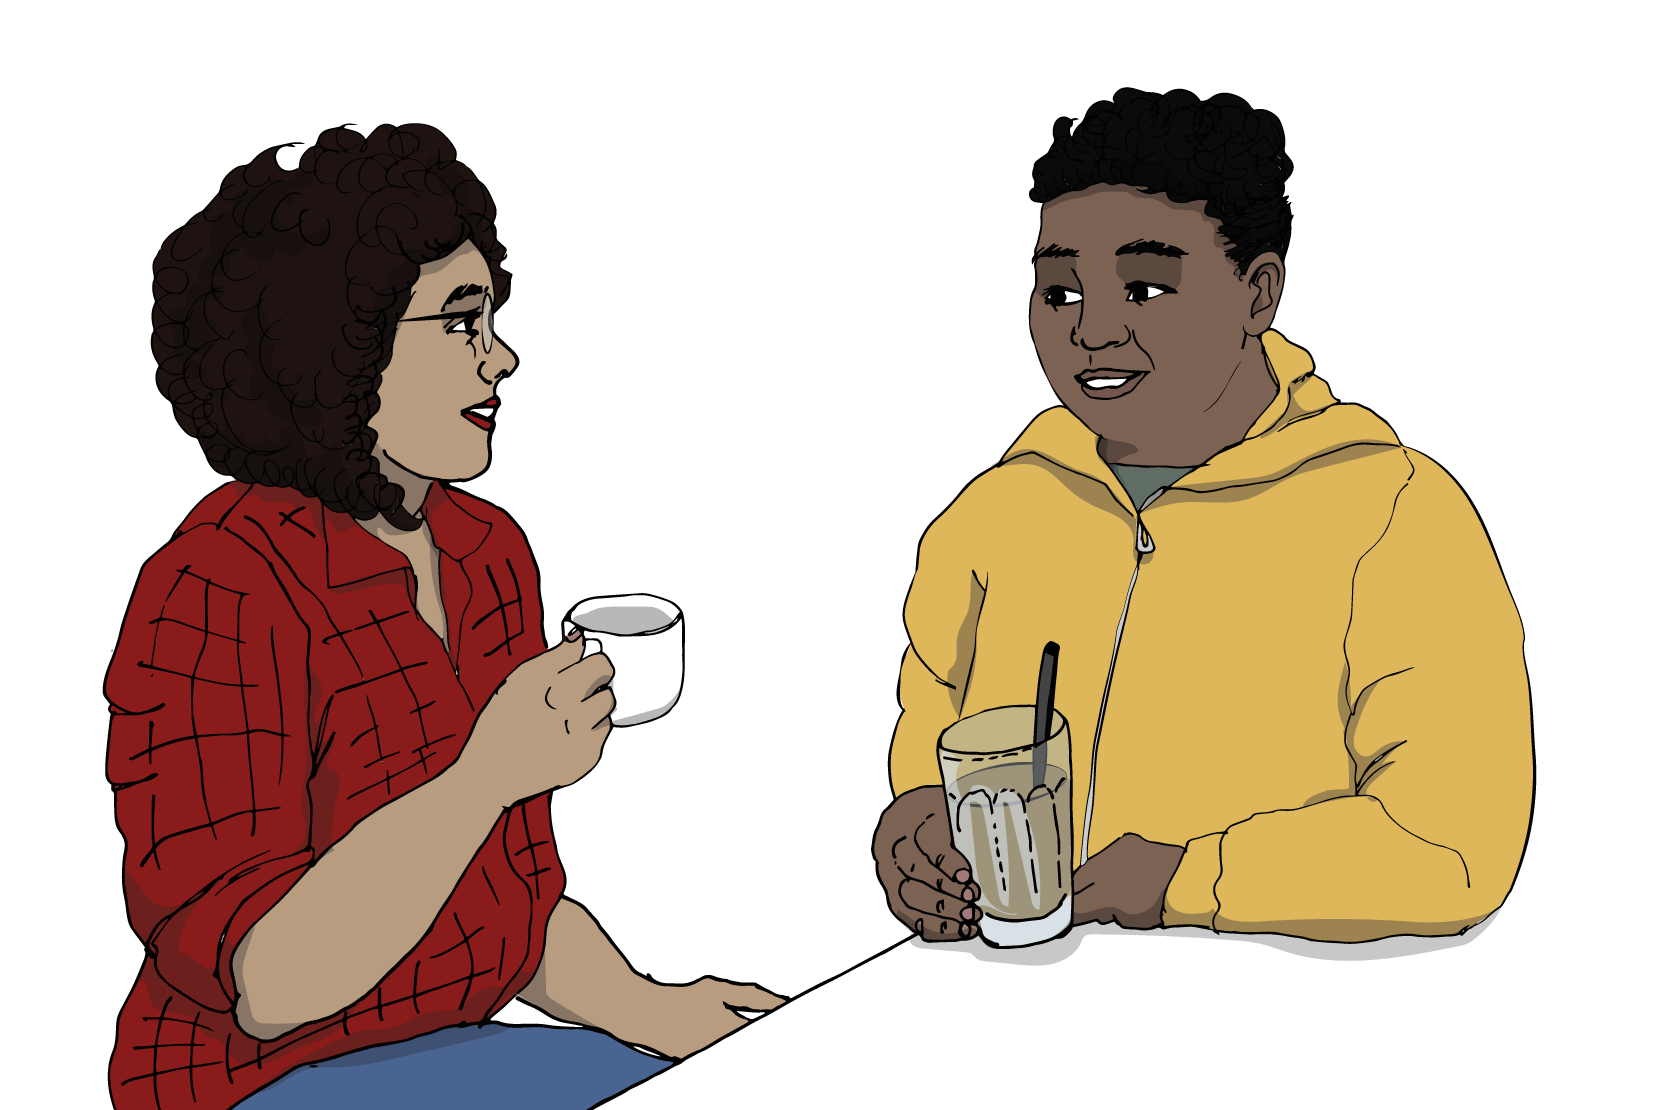 En kille och en tjej sitter med varsin kaffekopp och ser på varandra. 